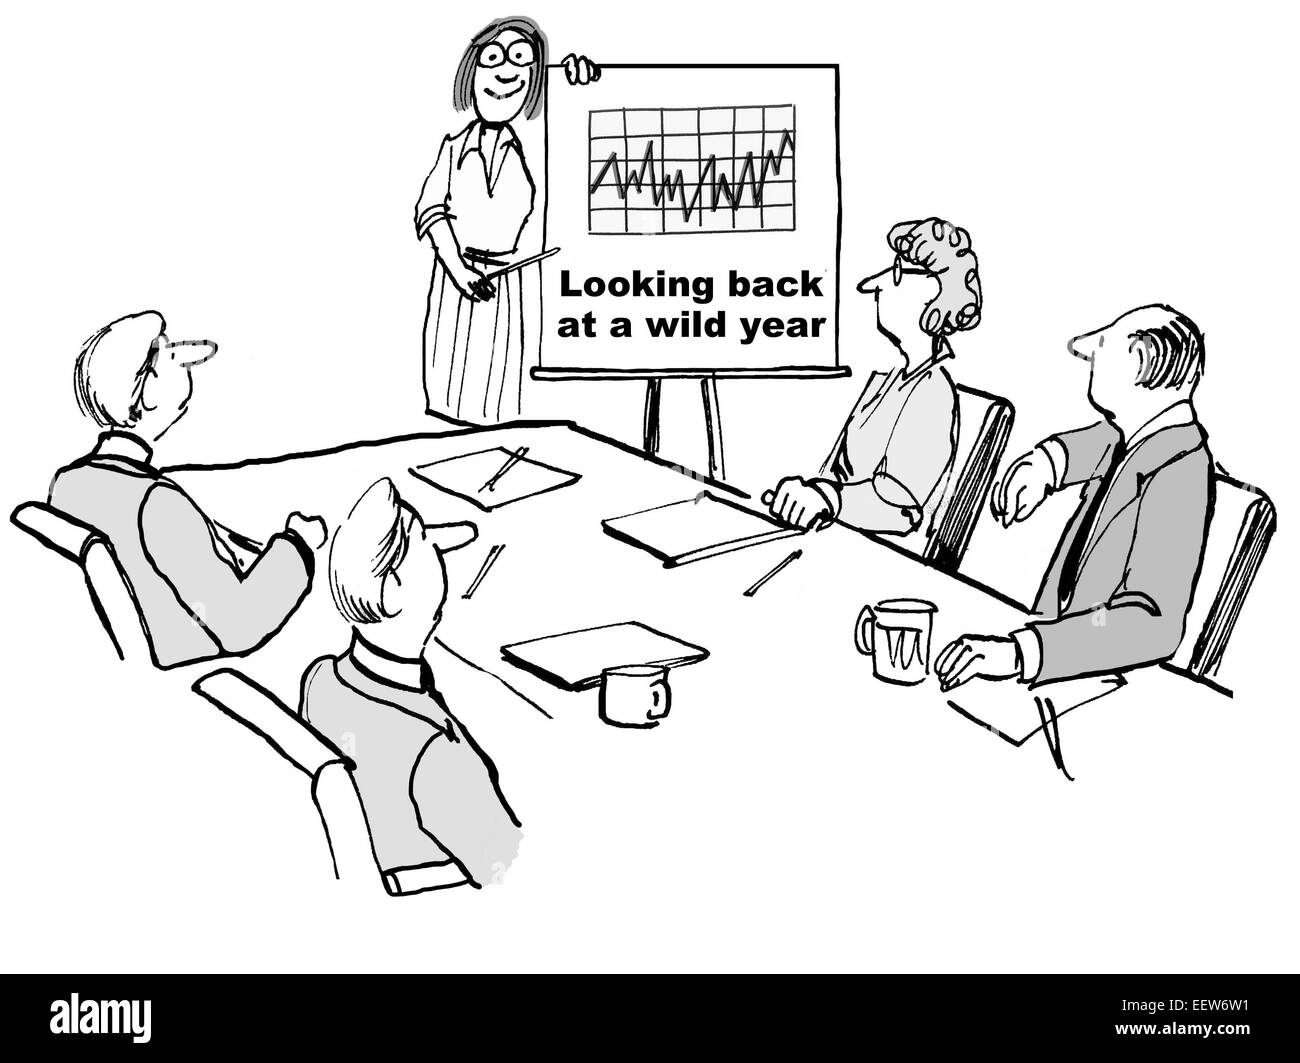 Cartoon zeigt Geschäftsleute in einer Besprechung, Blick auf ein Diagramm mit inkonsistenten jährlichen Geschäftsergebnisse. Stockfoto